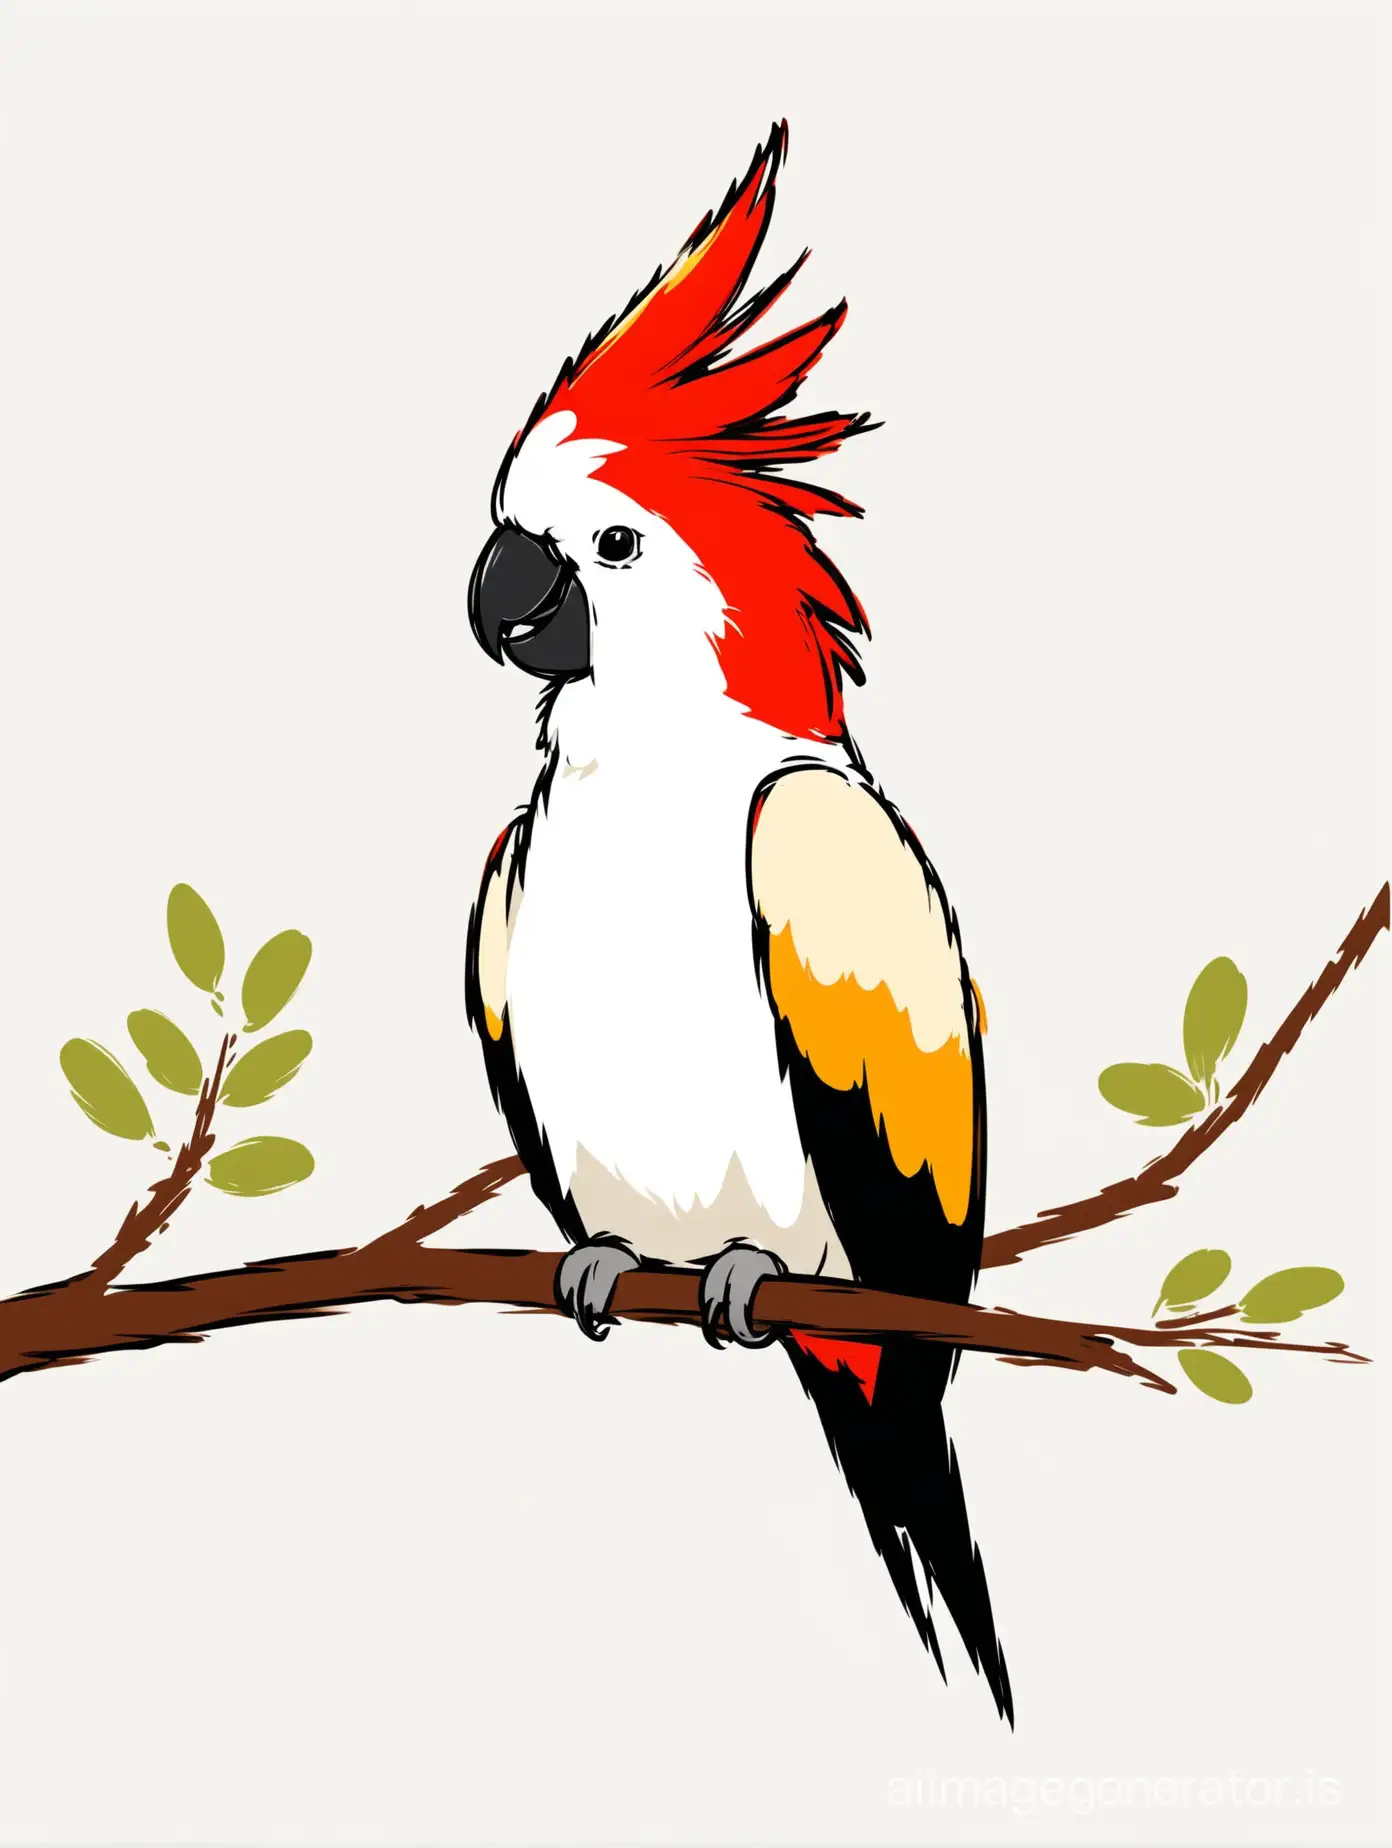 разноцветный какаду с красным хохолком сидит на ветке в профиль, плоская лайновая иллюстрация на белом фоне